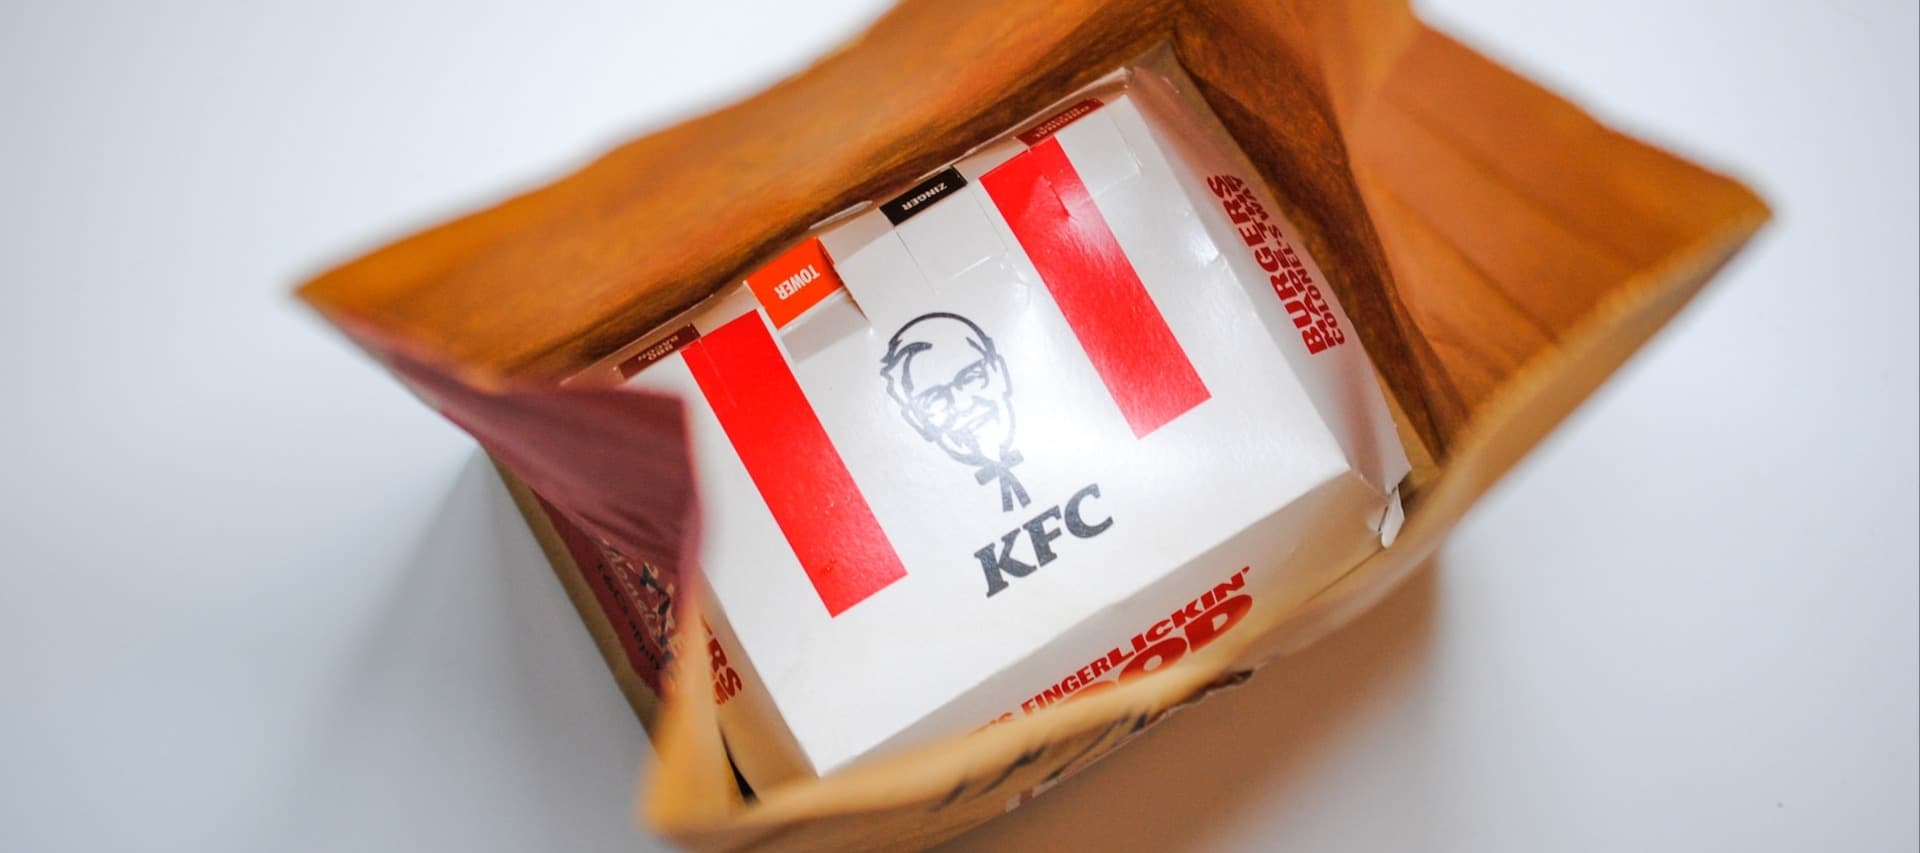 Фото новости: "Yum! Brands завершила сделку по продаже российского бизнеса KFC"